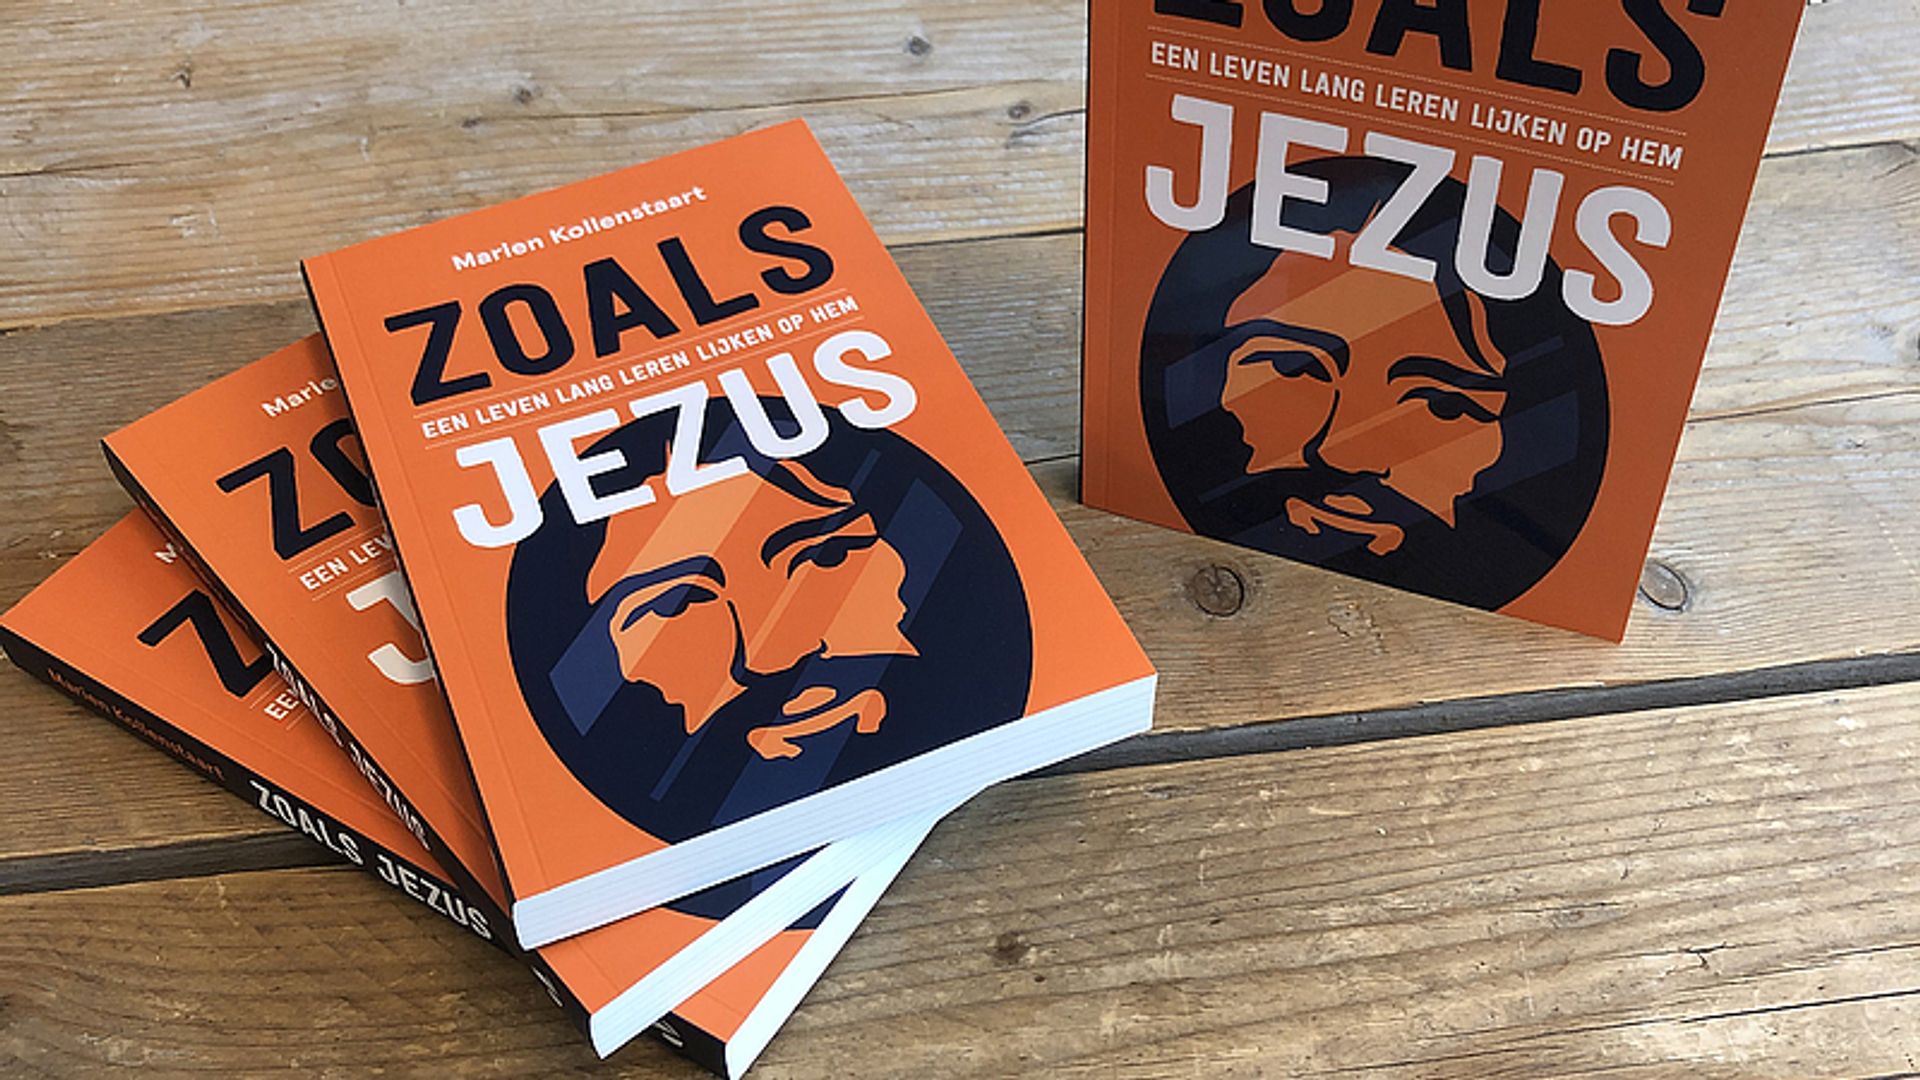 Lees ook: Ds. Marien Kollenstaart schrijft boek 'Zoals Jezus'